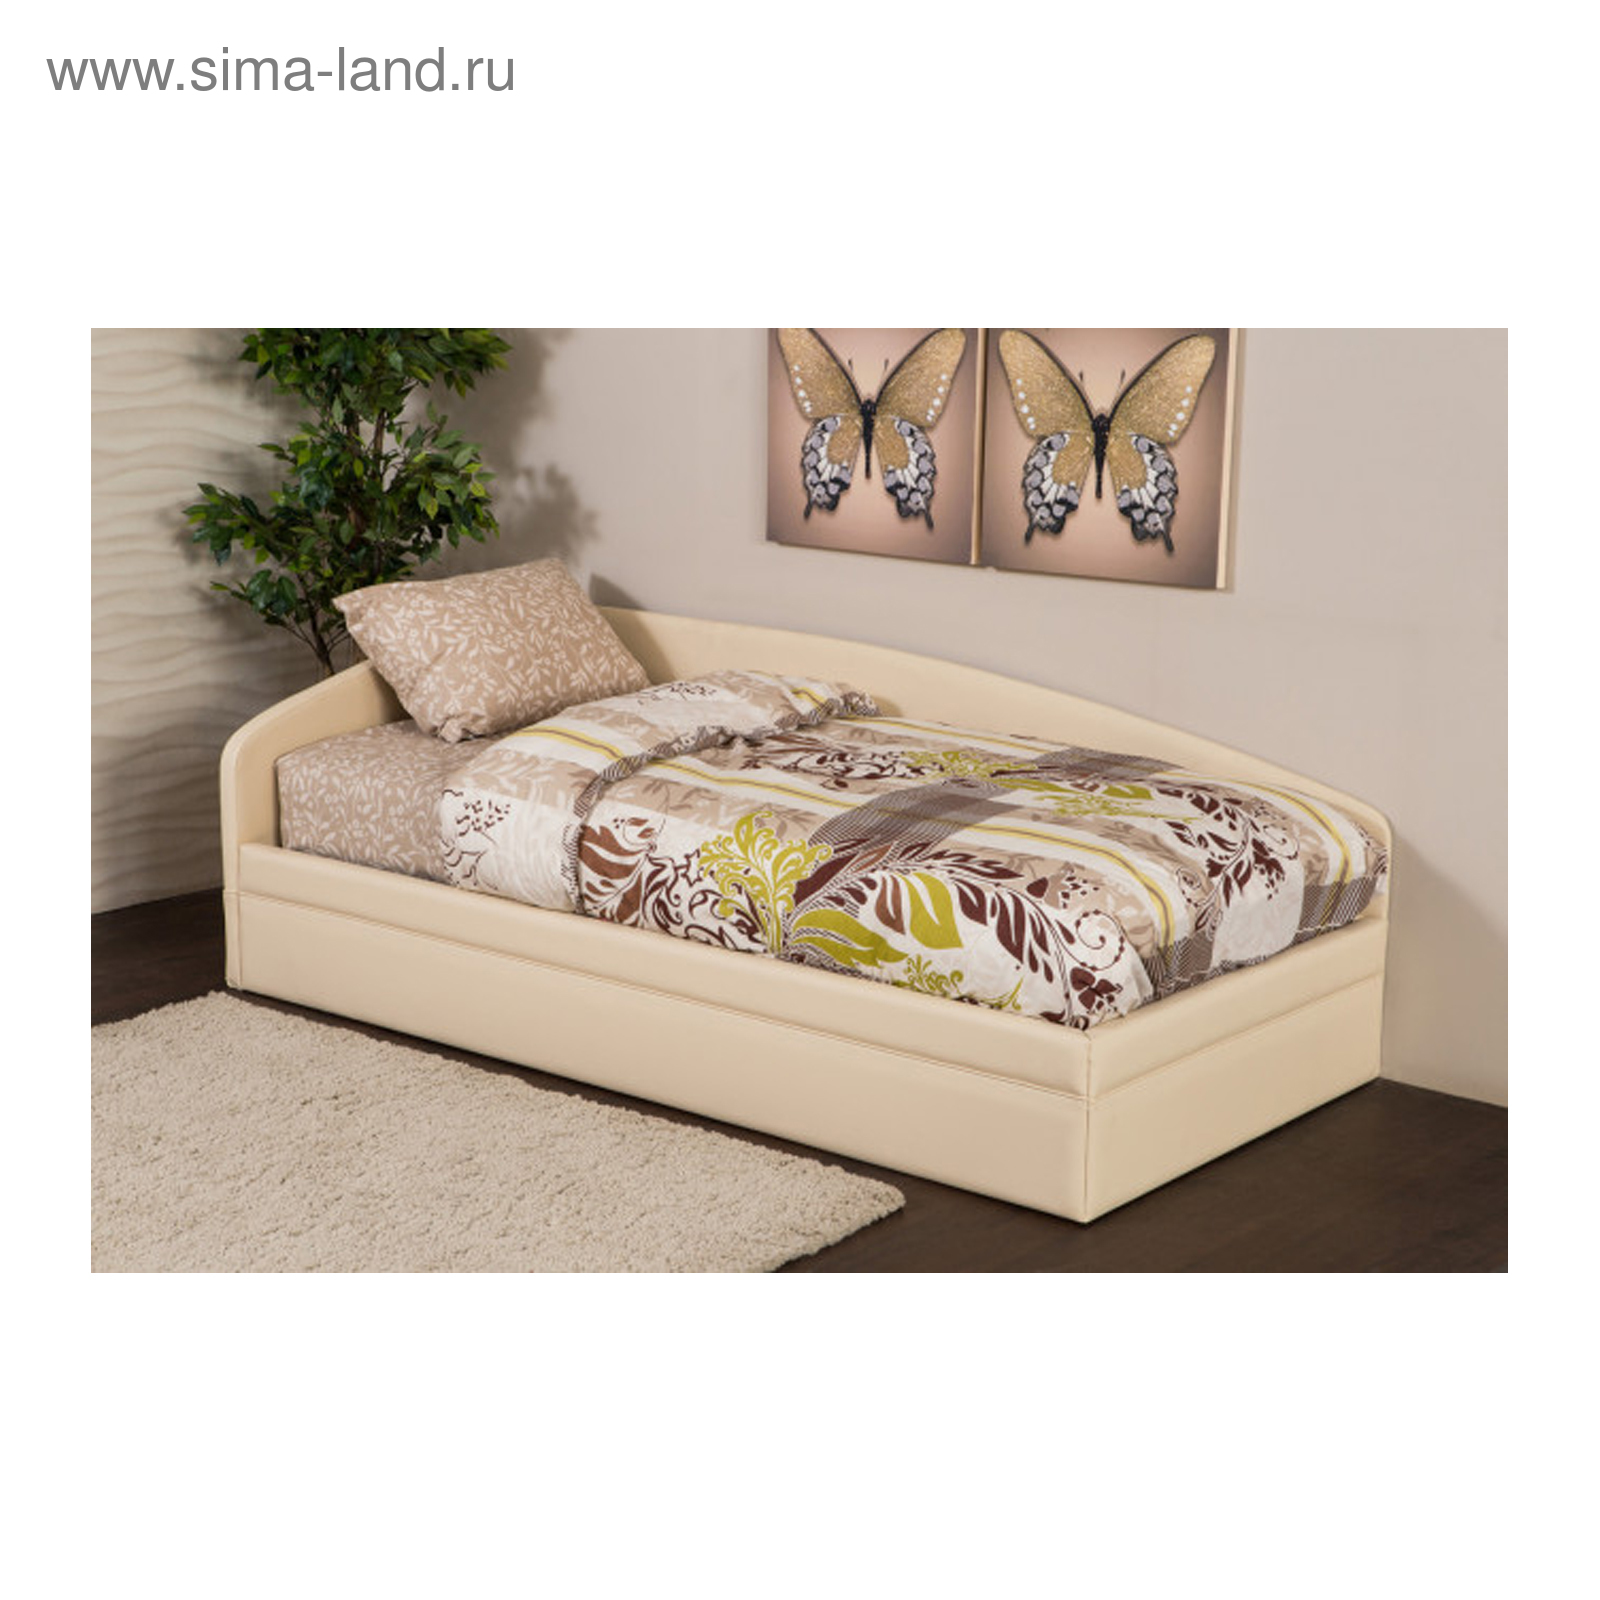 кровать dream land 200х180 см